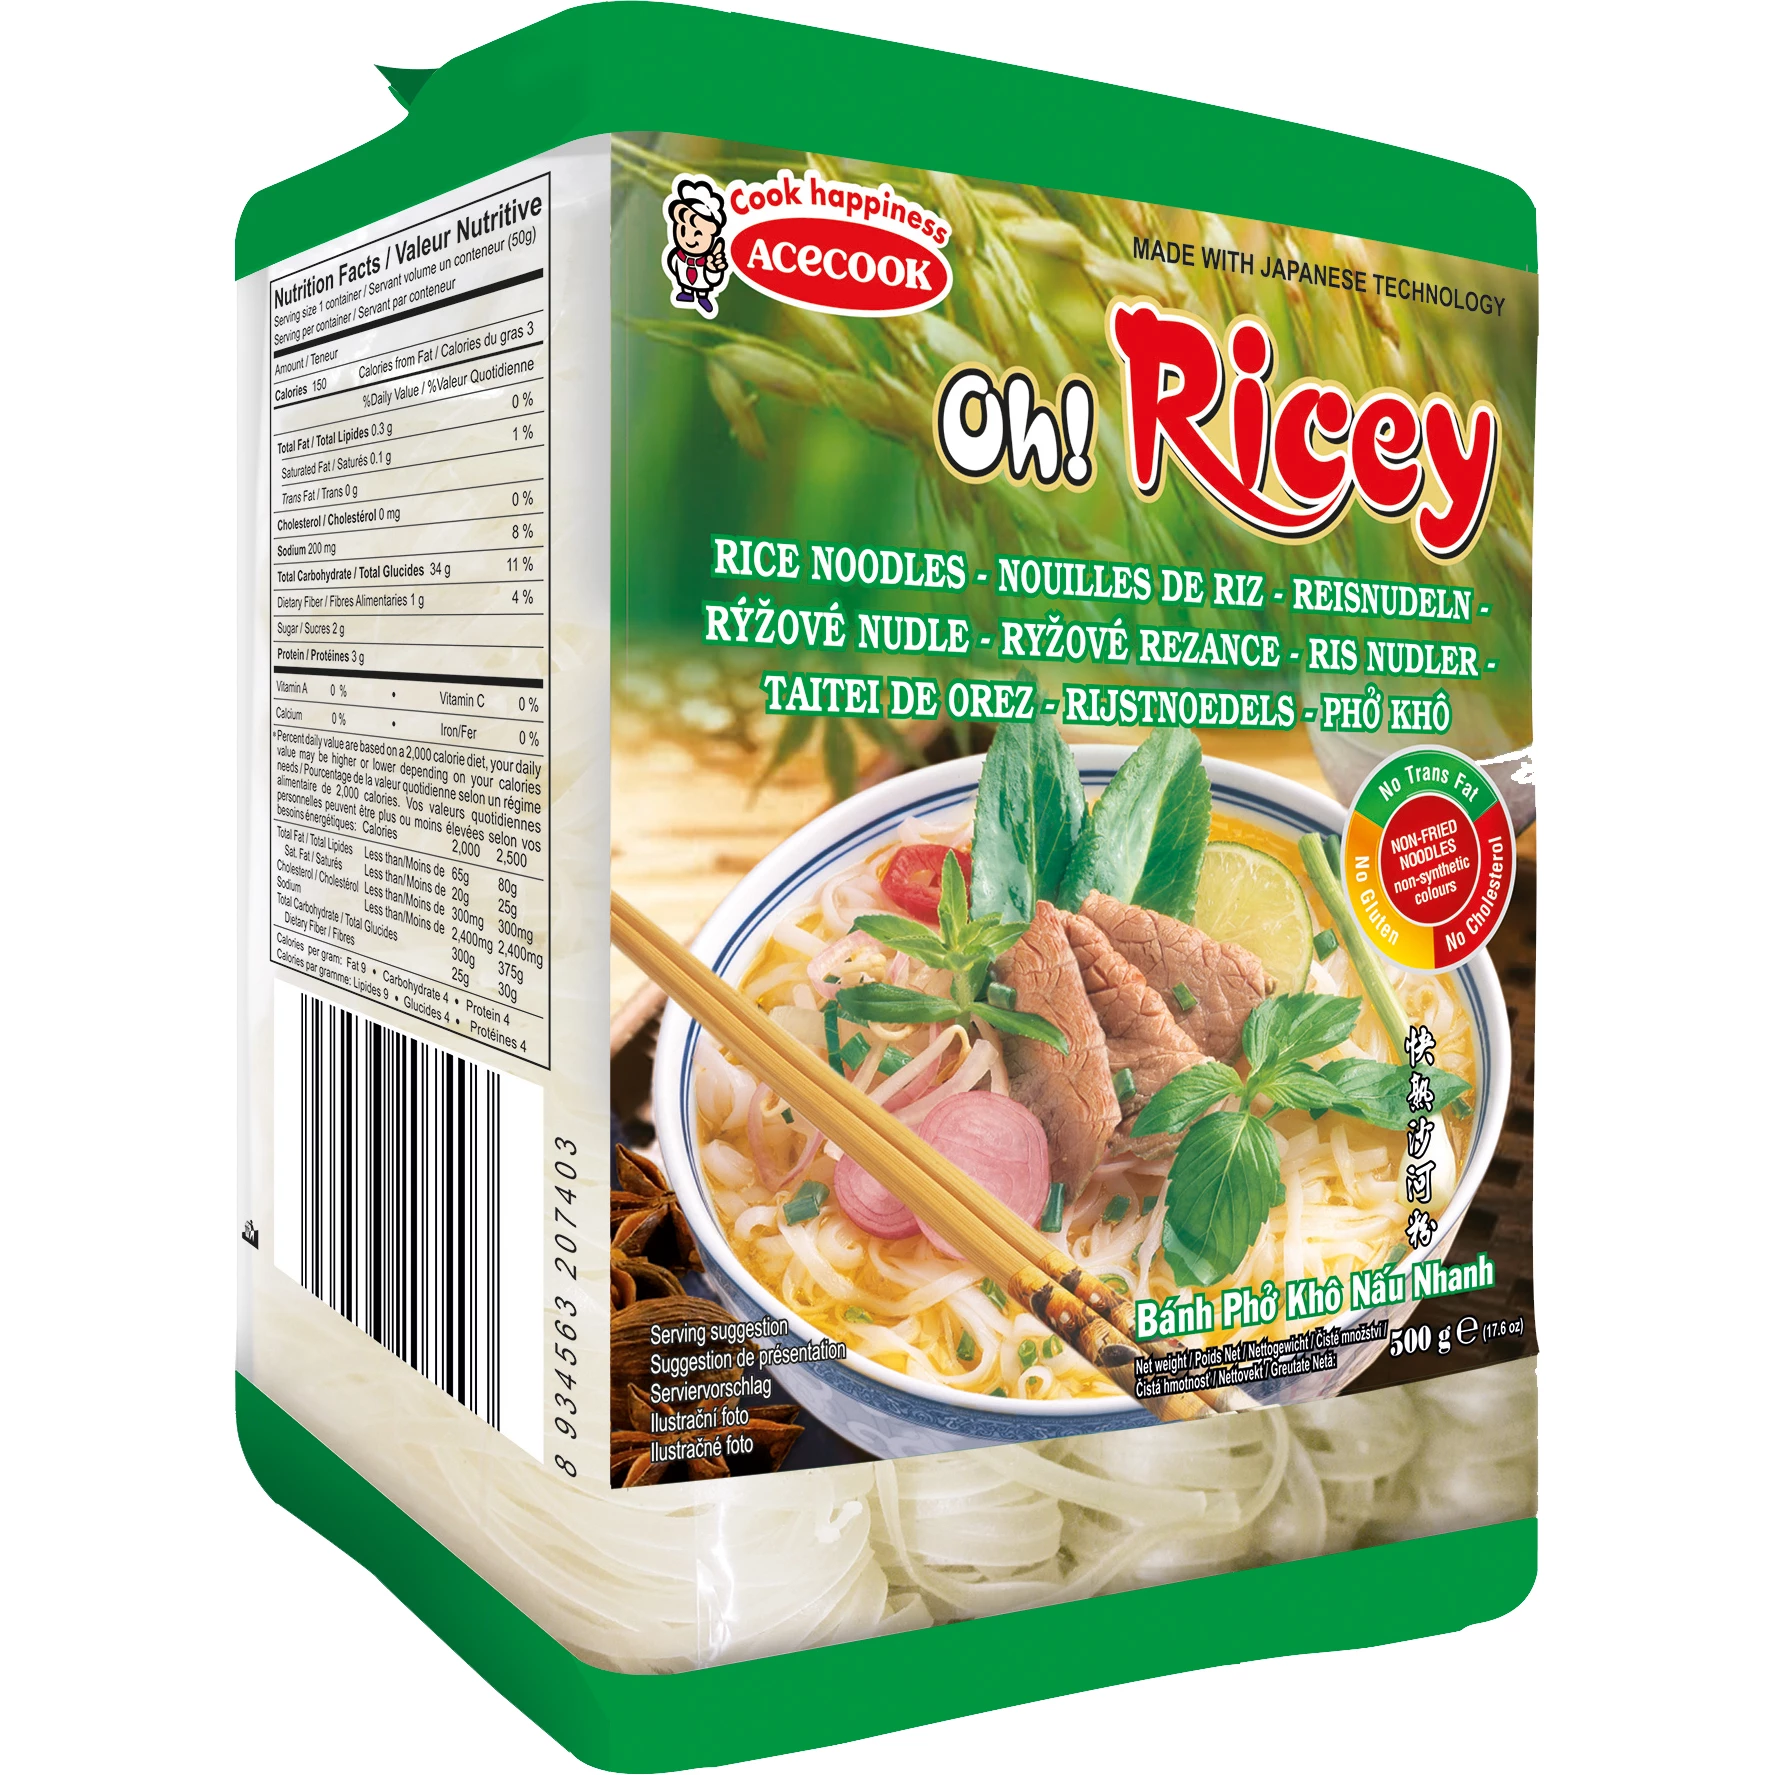 نودلز الأرز الذهبي 18 × 500 غرام - أككوك